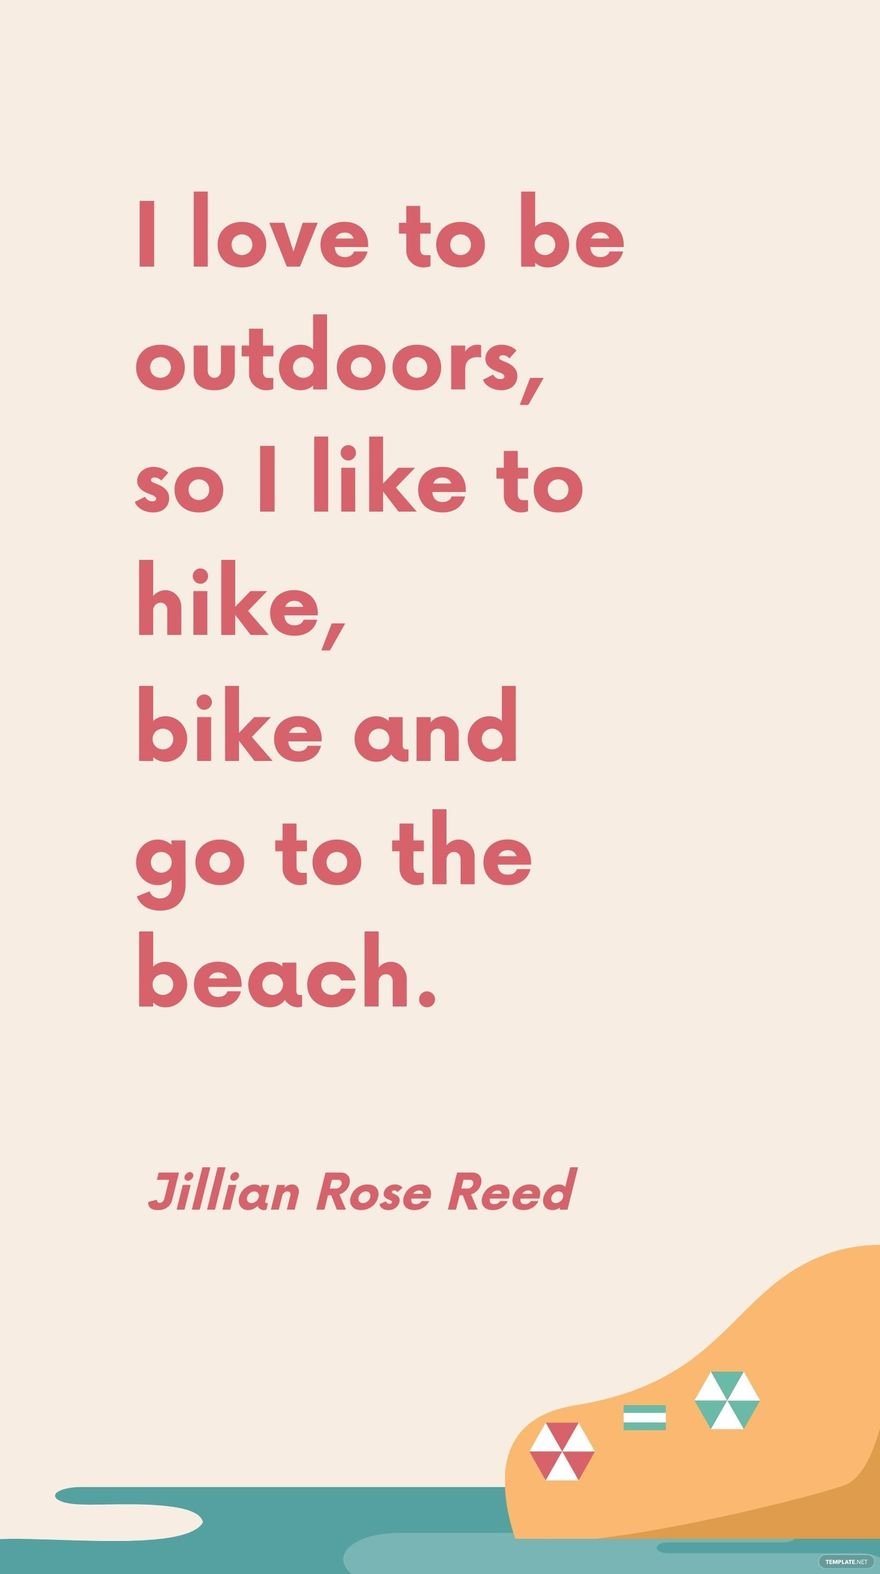 Jillian Rose Reed - I love to be outdoors, so I like to hike, bike and go to the beach. in JPG